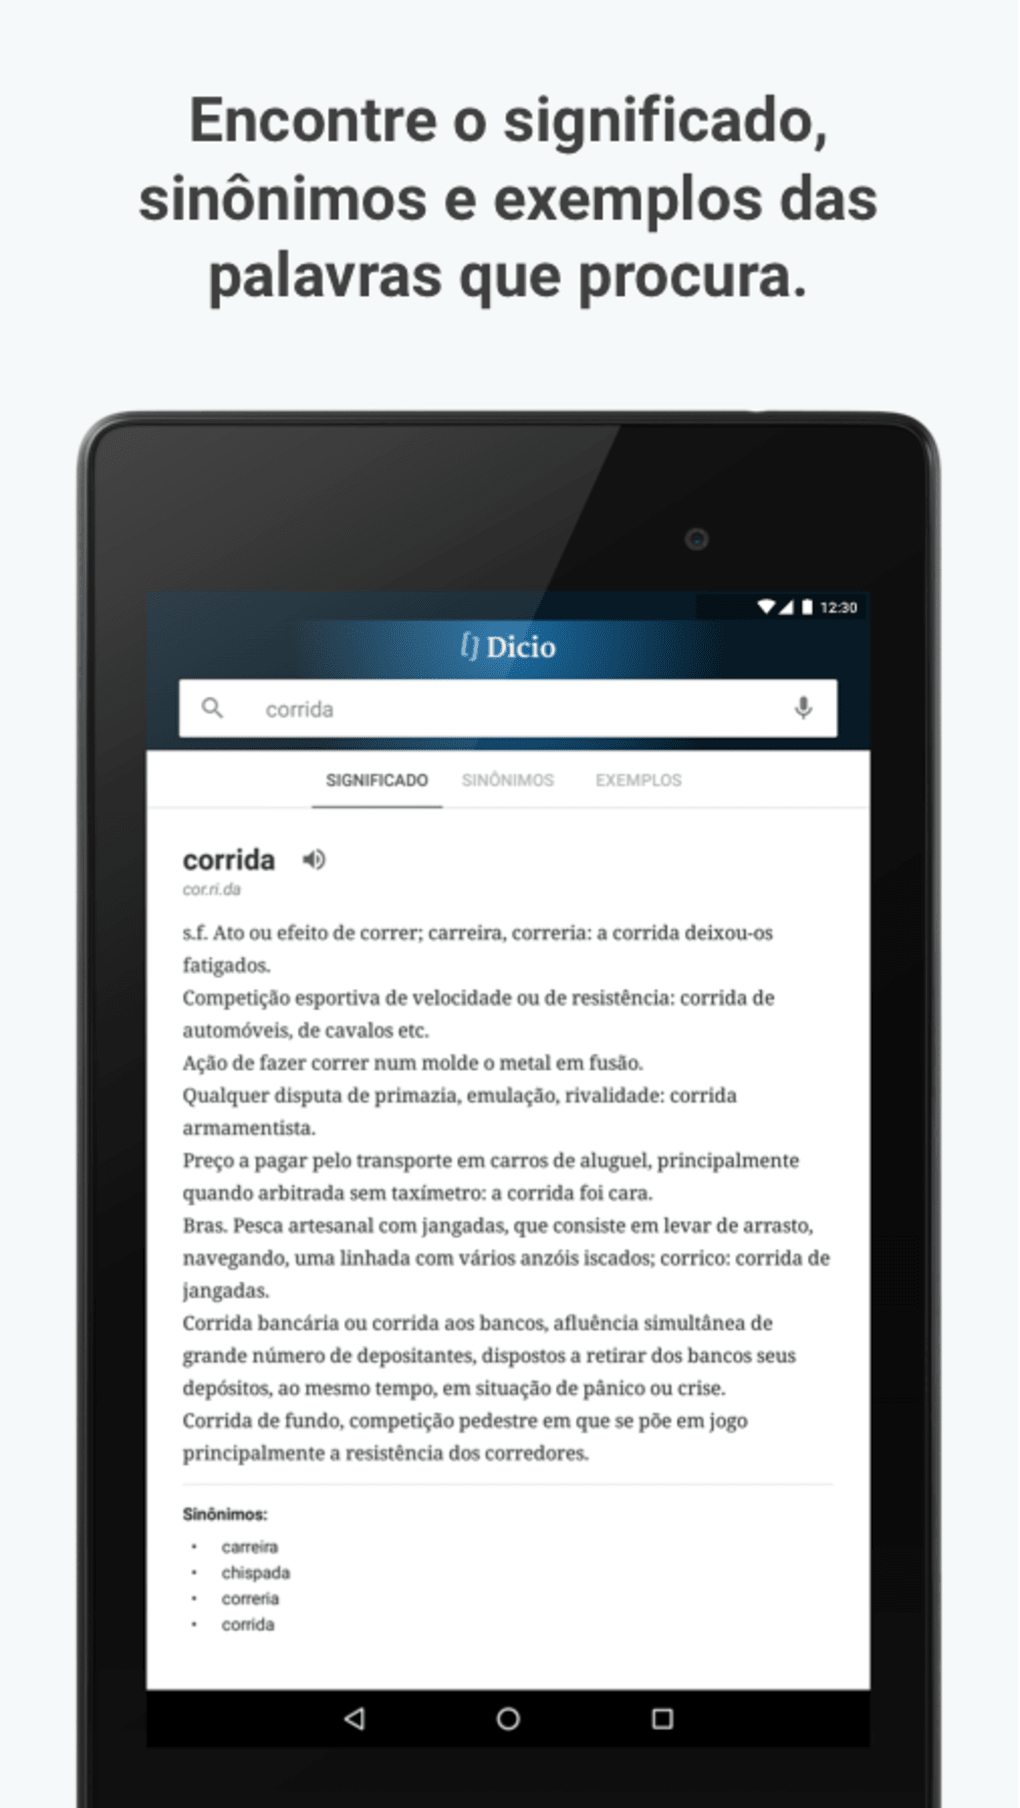 Apto - Dicio, Dicionário Online de Português